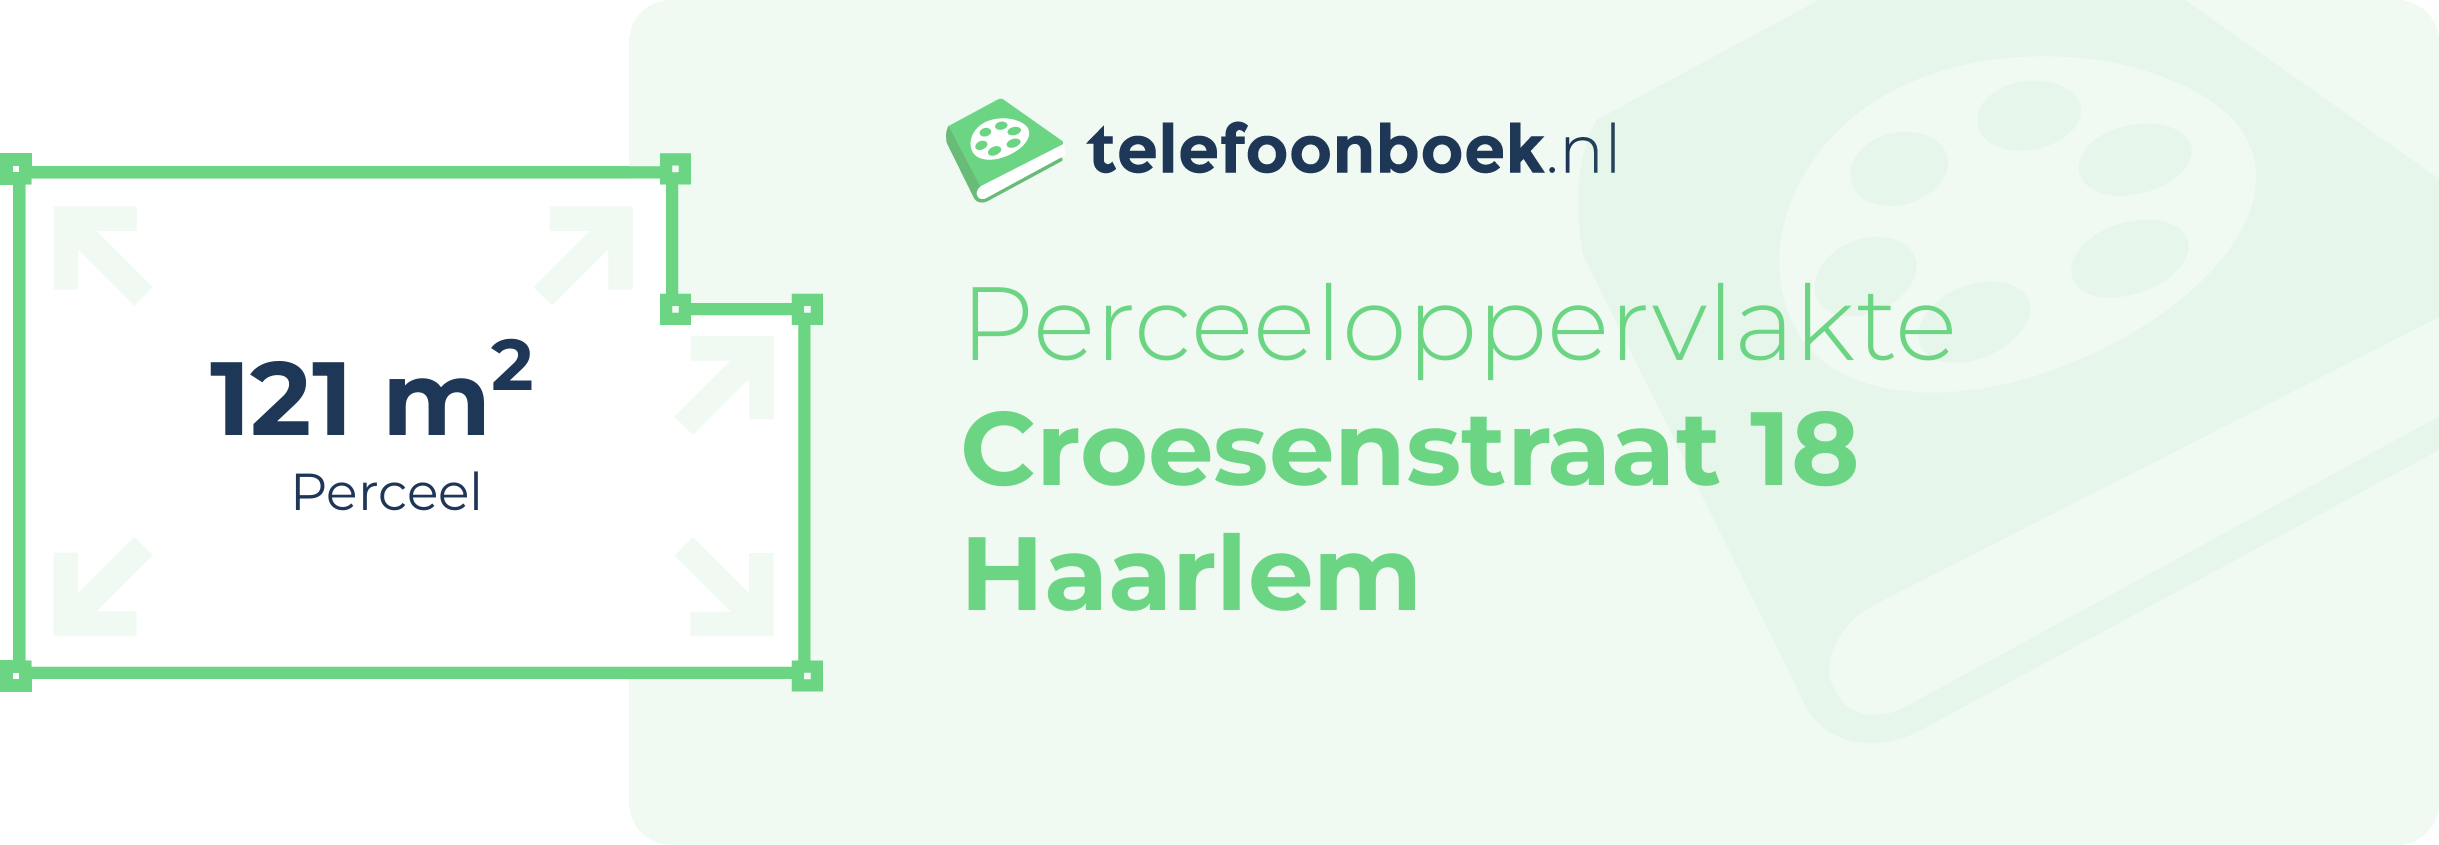 Perceeloppervlakte Croesenstraat 18 Haarlem